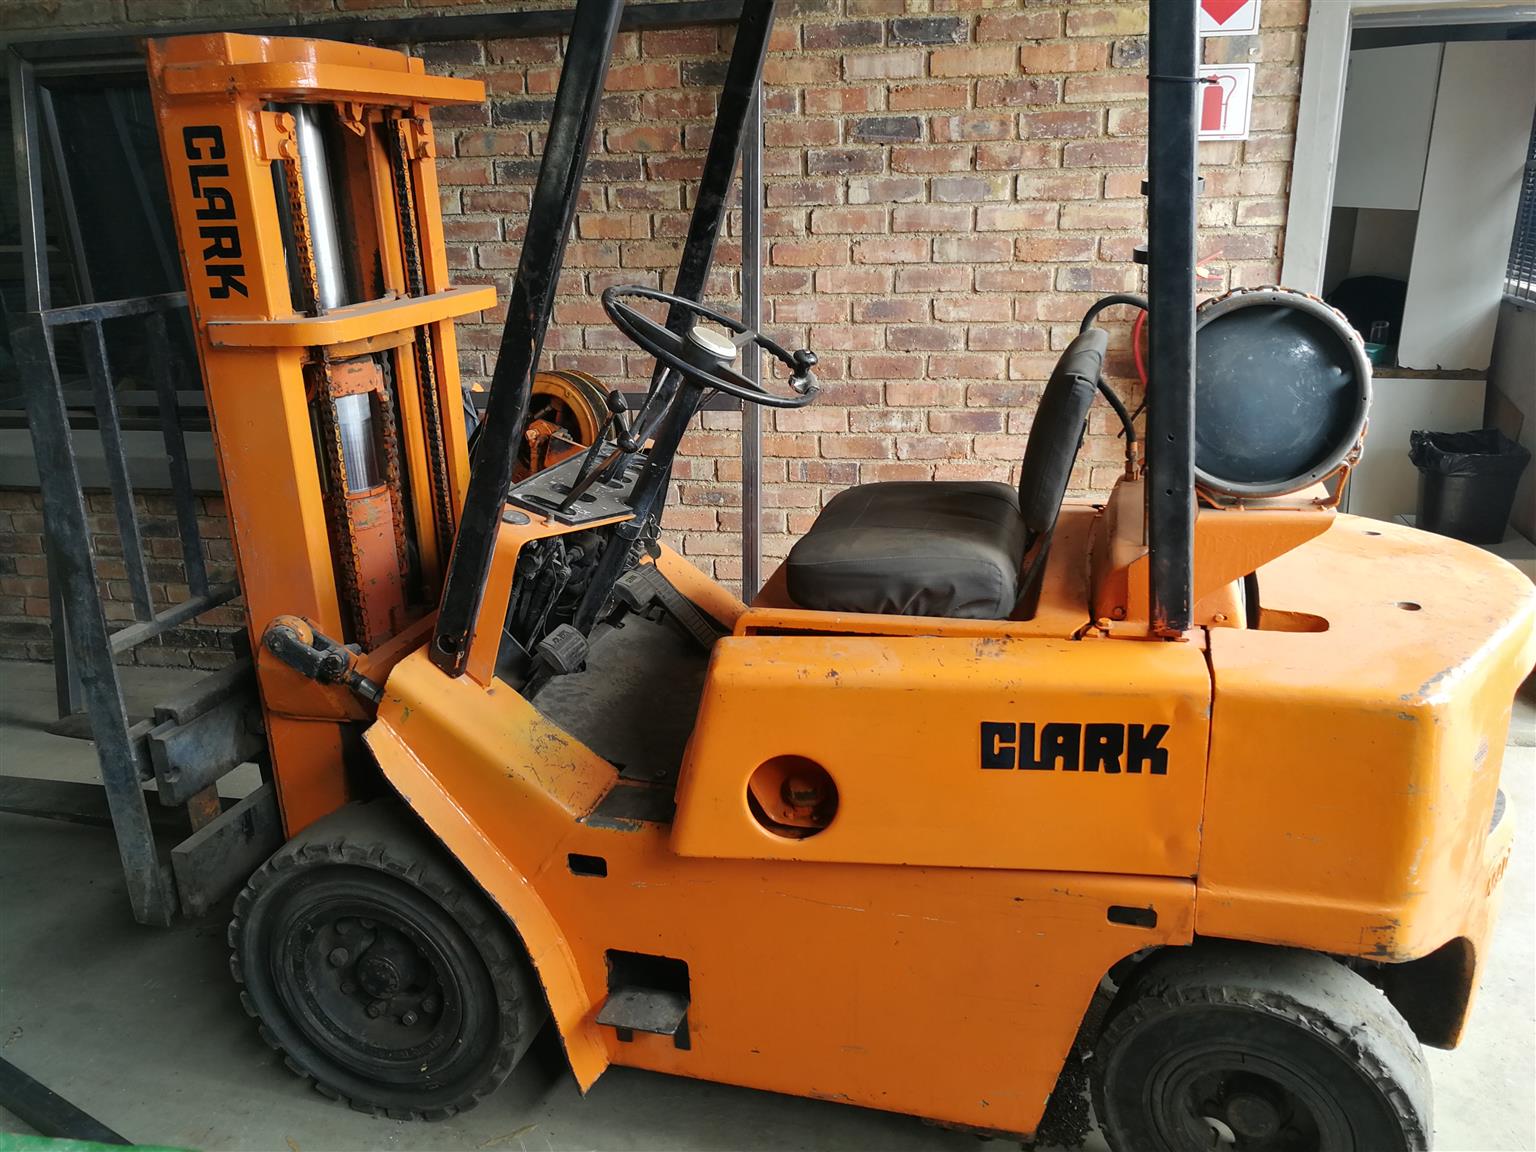 Clark Forklift For Sale 2 5t Junk Mail